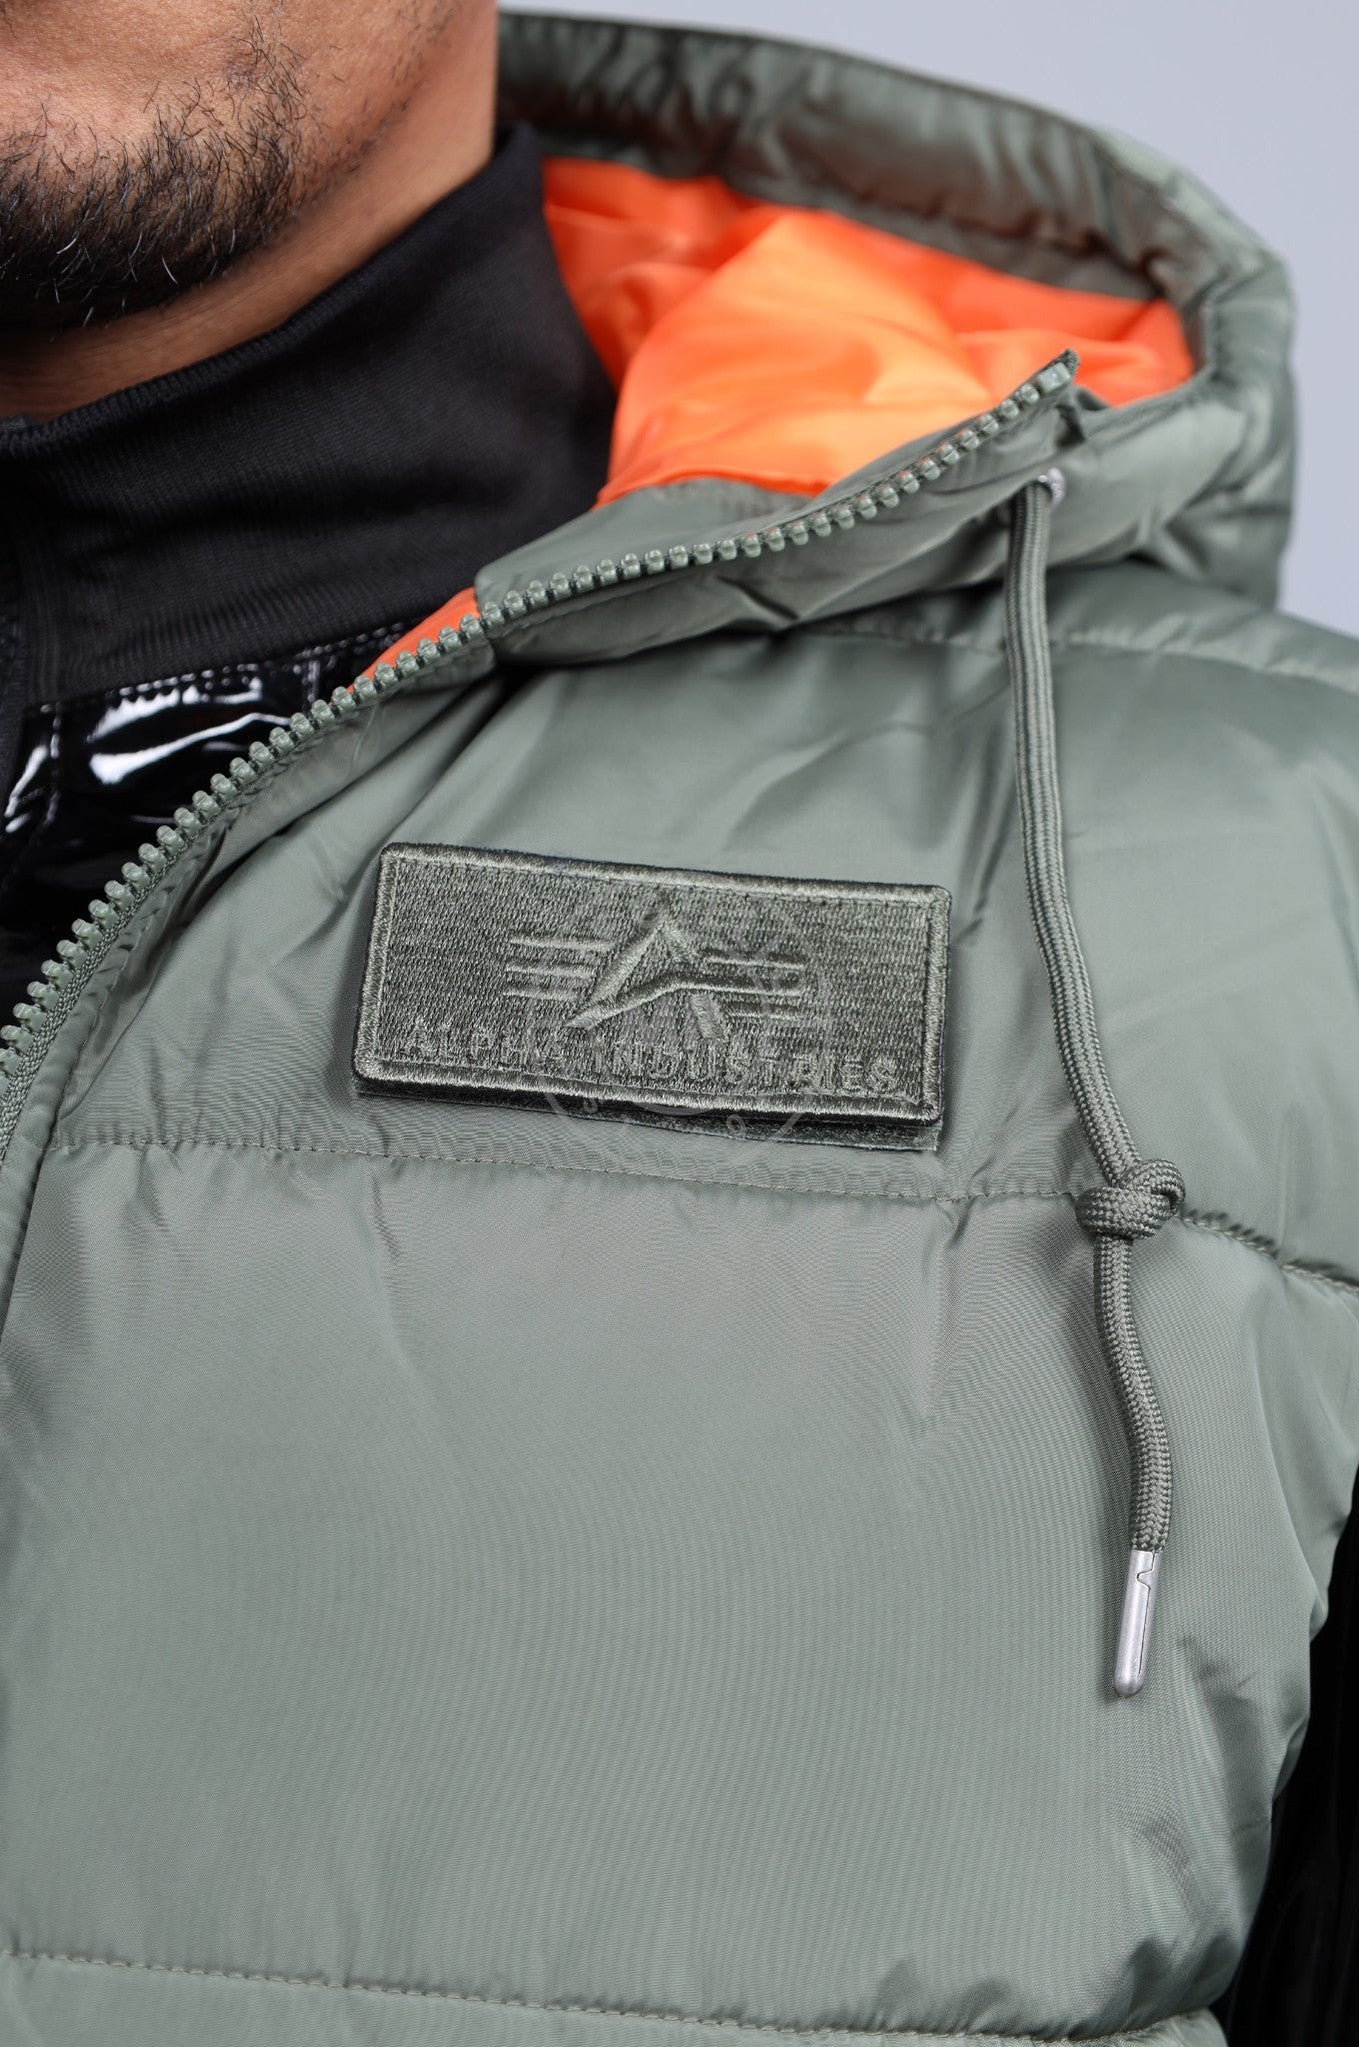 Alpha Industries Hooded Puffer Vest FD - Sage Green at MR. Riegillio